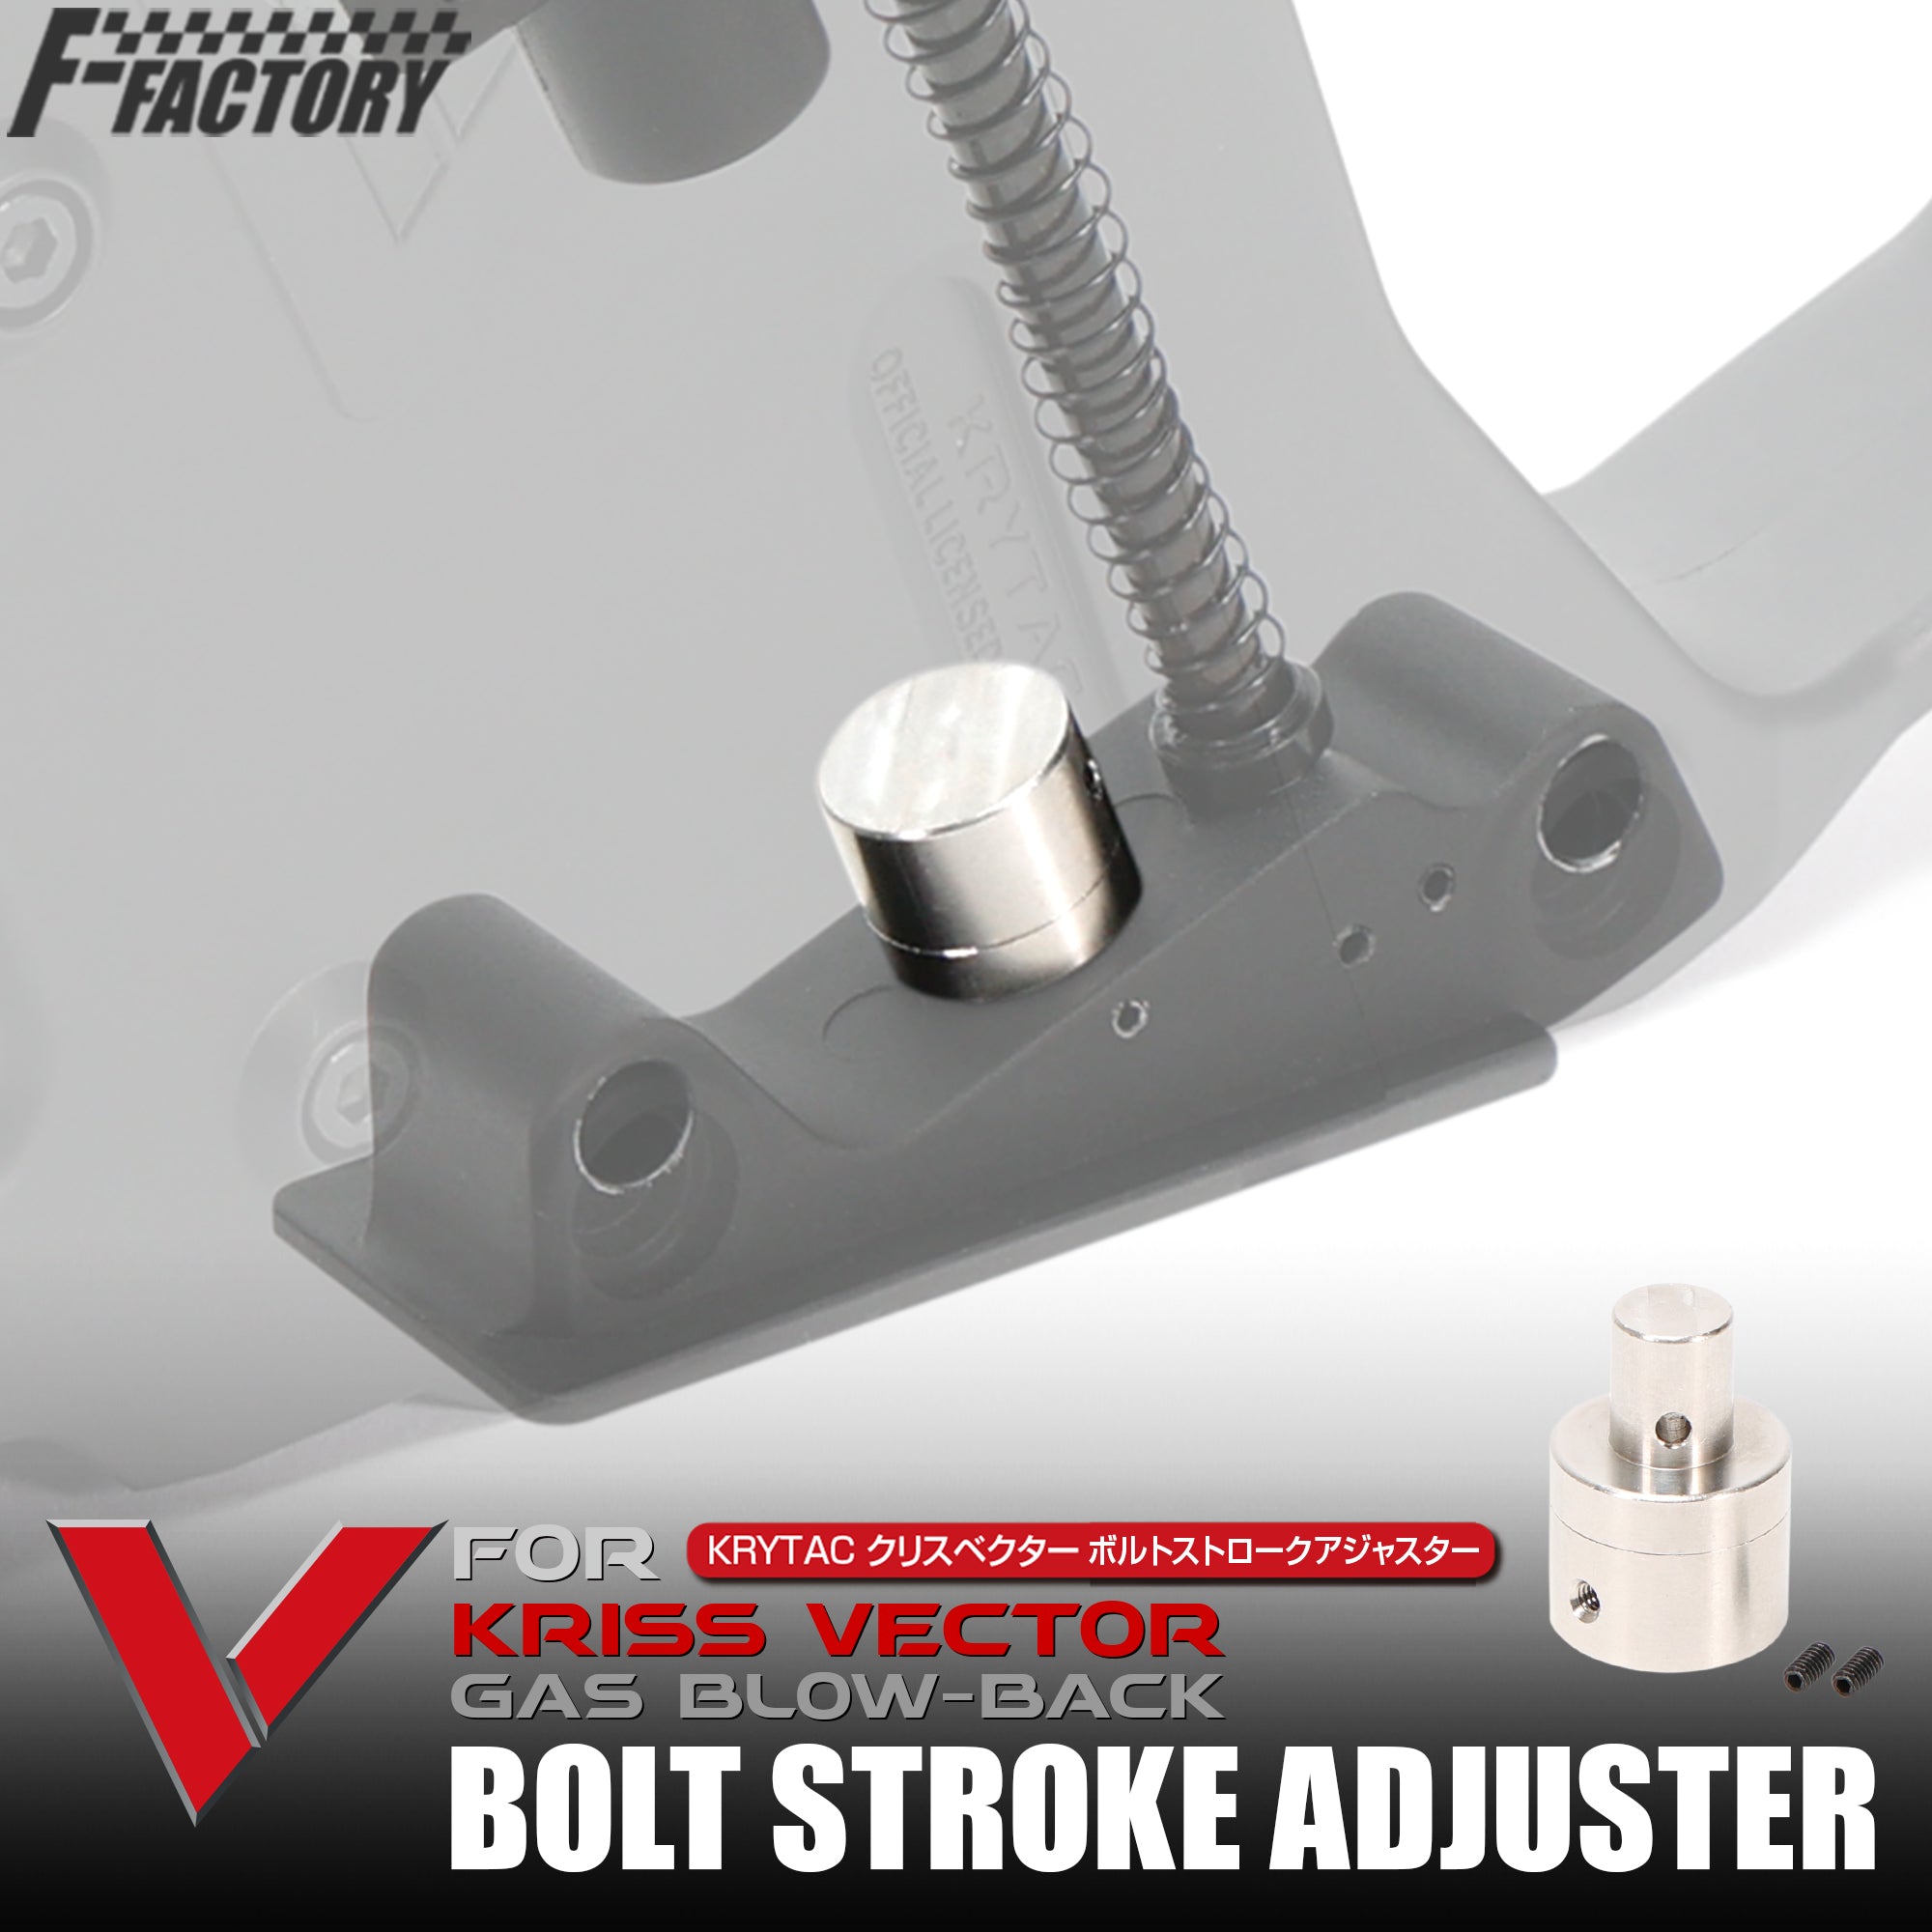 KRYTAC KRISS VECTOR Gas Blowback Bolt Stroke Adjuster [First Factory]